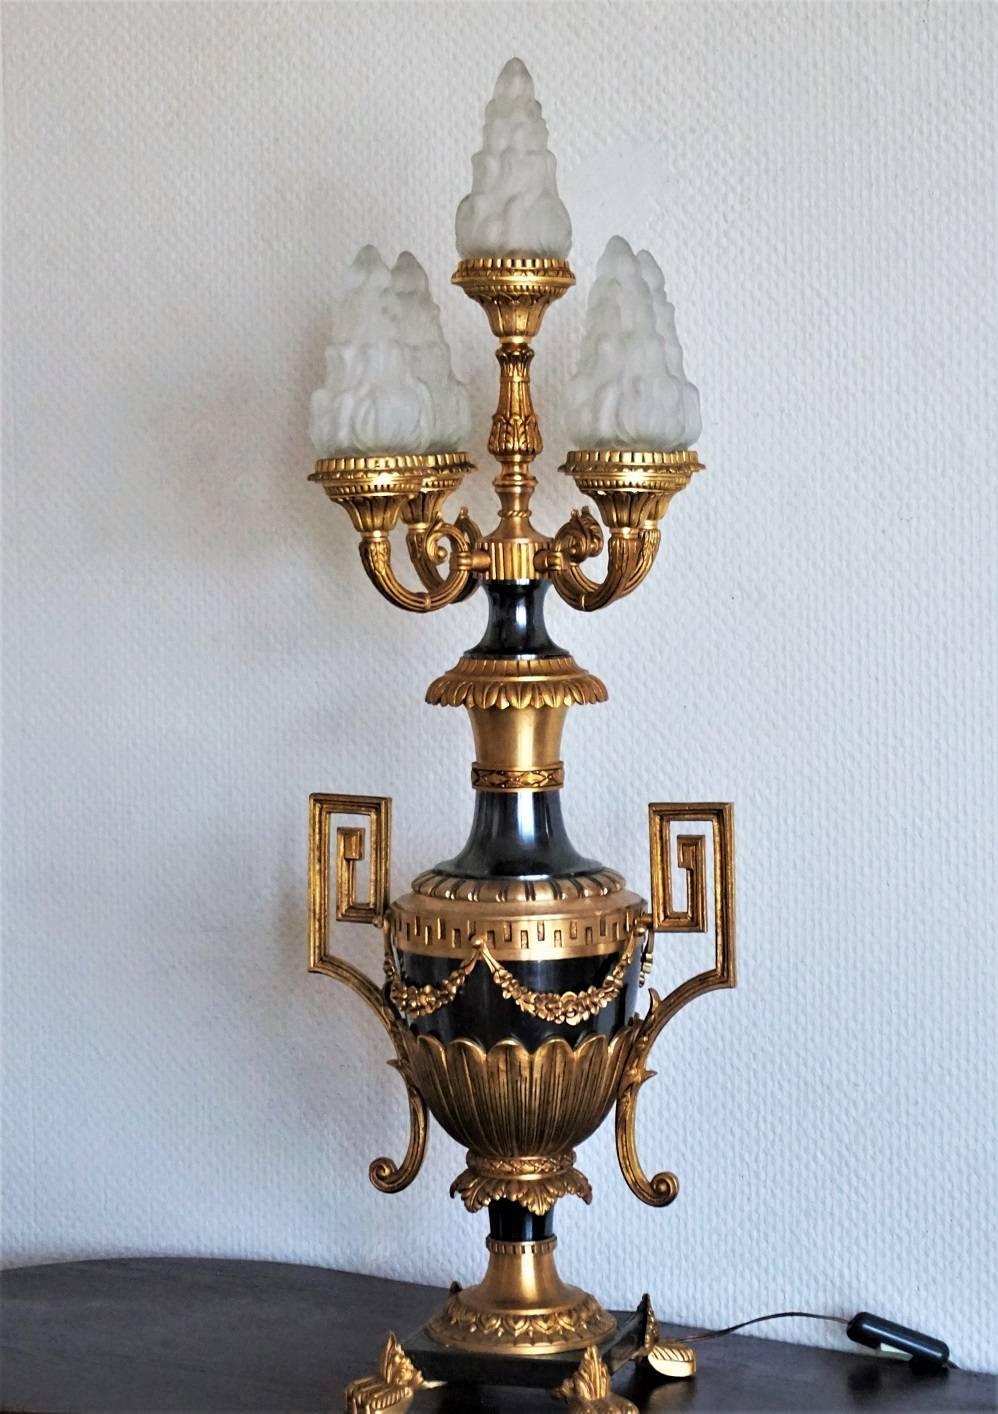 Große, schwere, vergoldete und patinierte Bronze-Amphora-Tischlampe im Empire-Stil, verziert mit feinen Ornamenten und Girlanden auf einem quadratischen Sockel, der von vier mit Blättern bedeckten Füßen getragen wird. Fünflampig mit Flammenschirmen